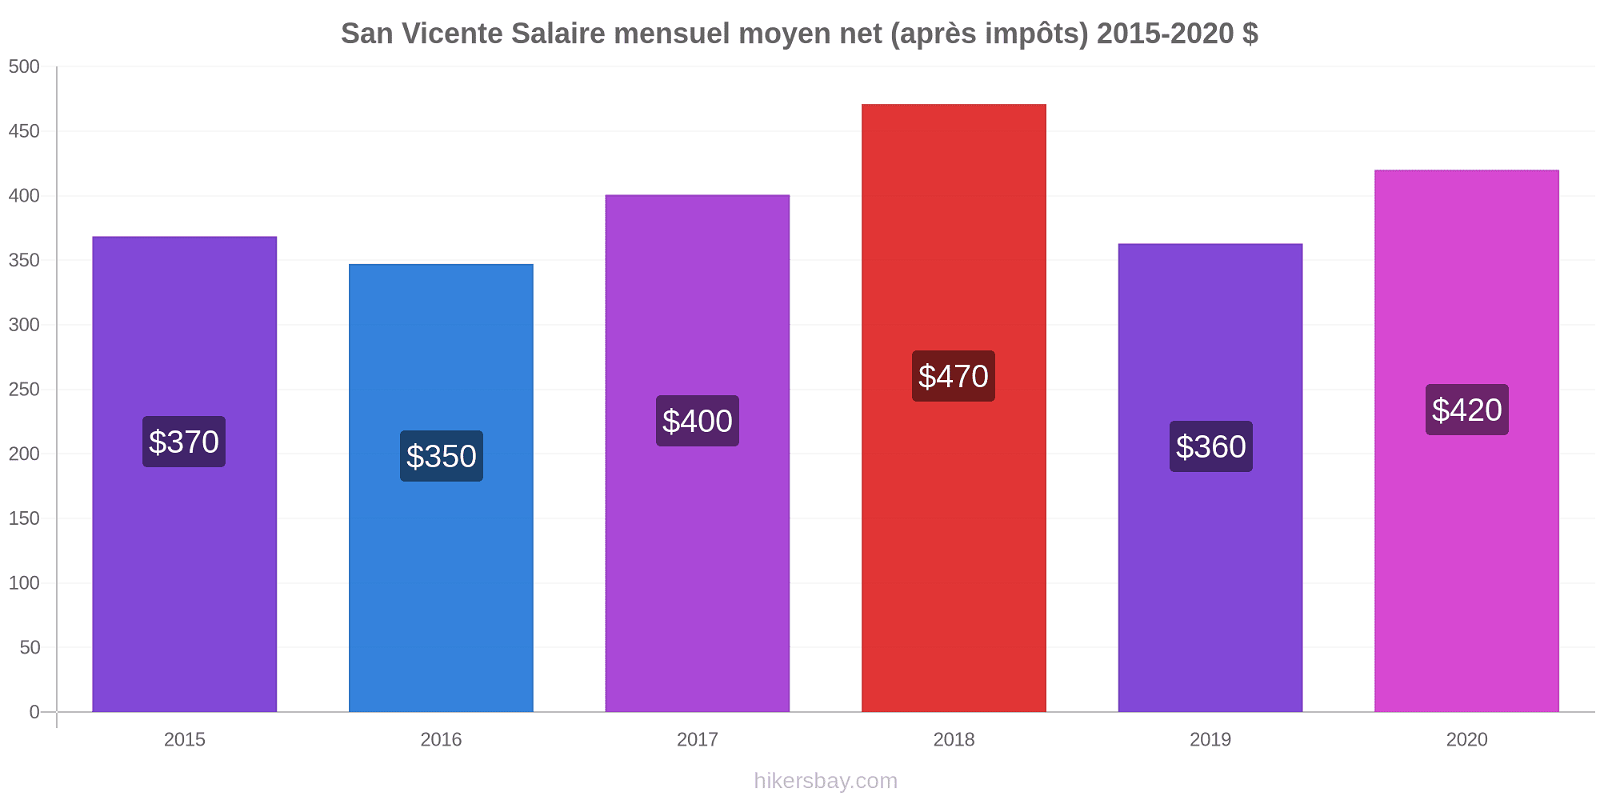 San Vicente changements de prix Salaire mensuel Net (après impôts) hikersbay.com